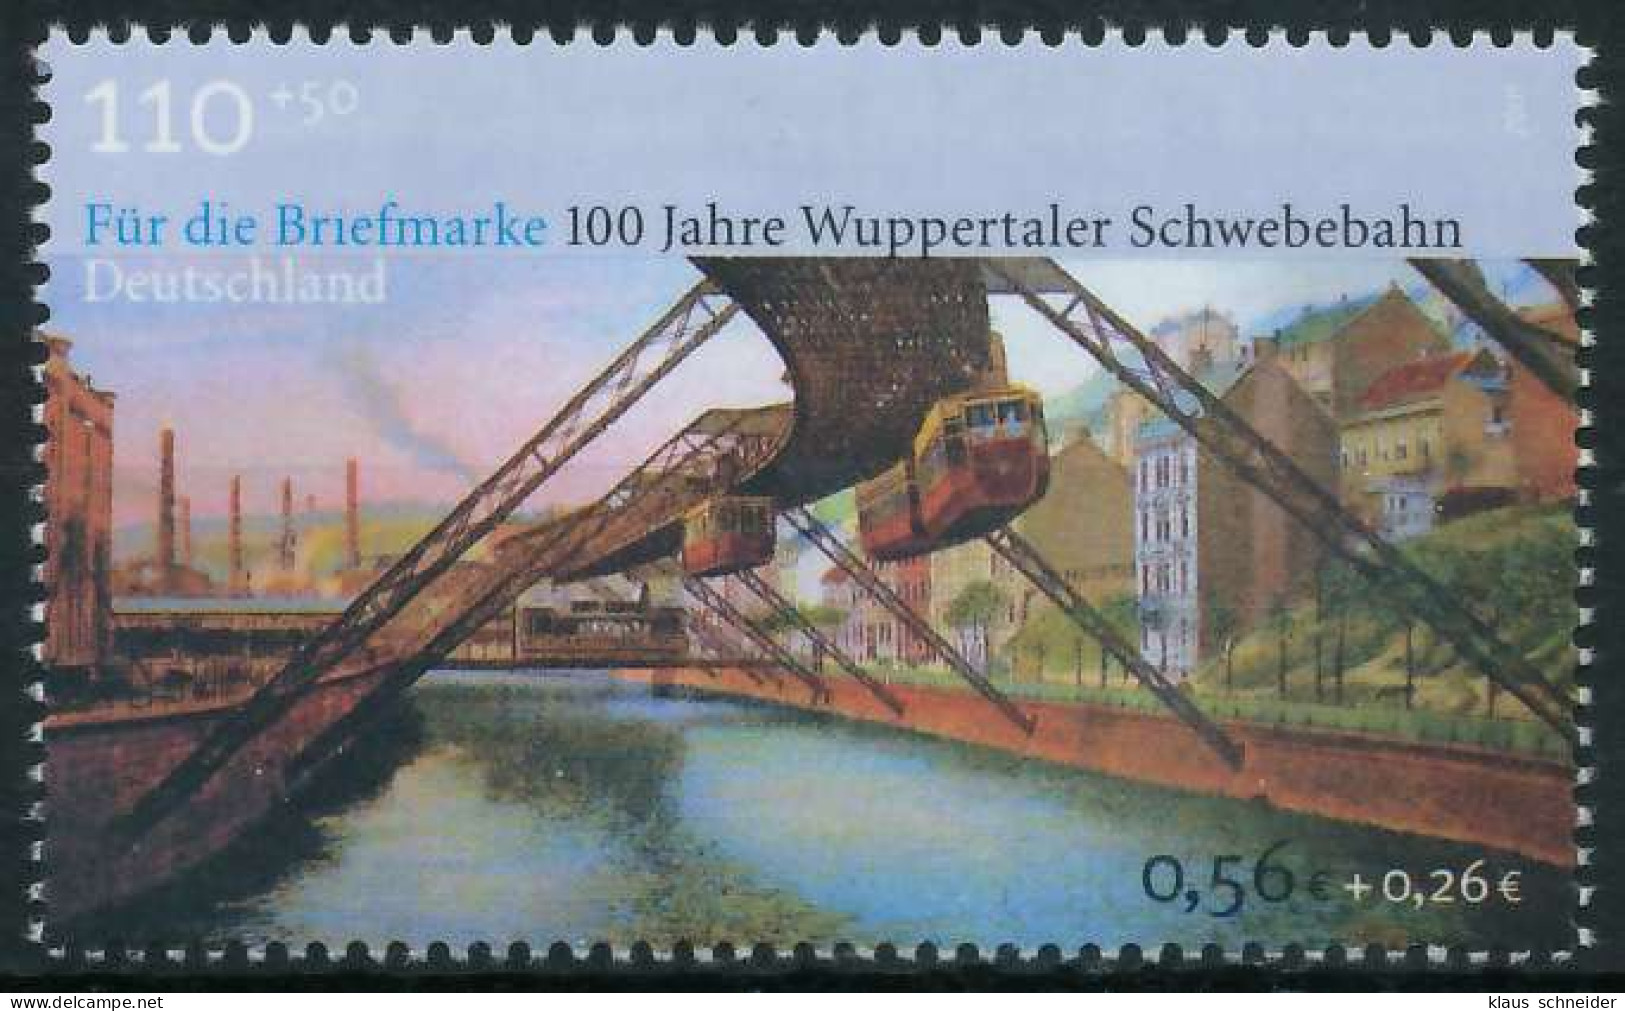 BRD BUND 2001 Nr 2171 Postfrisch SE1949E - Unused Stamps